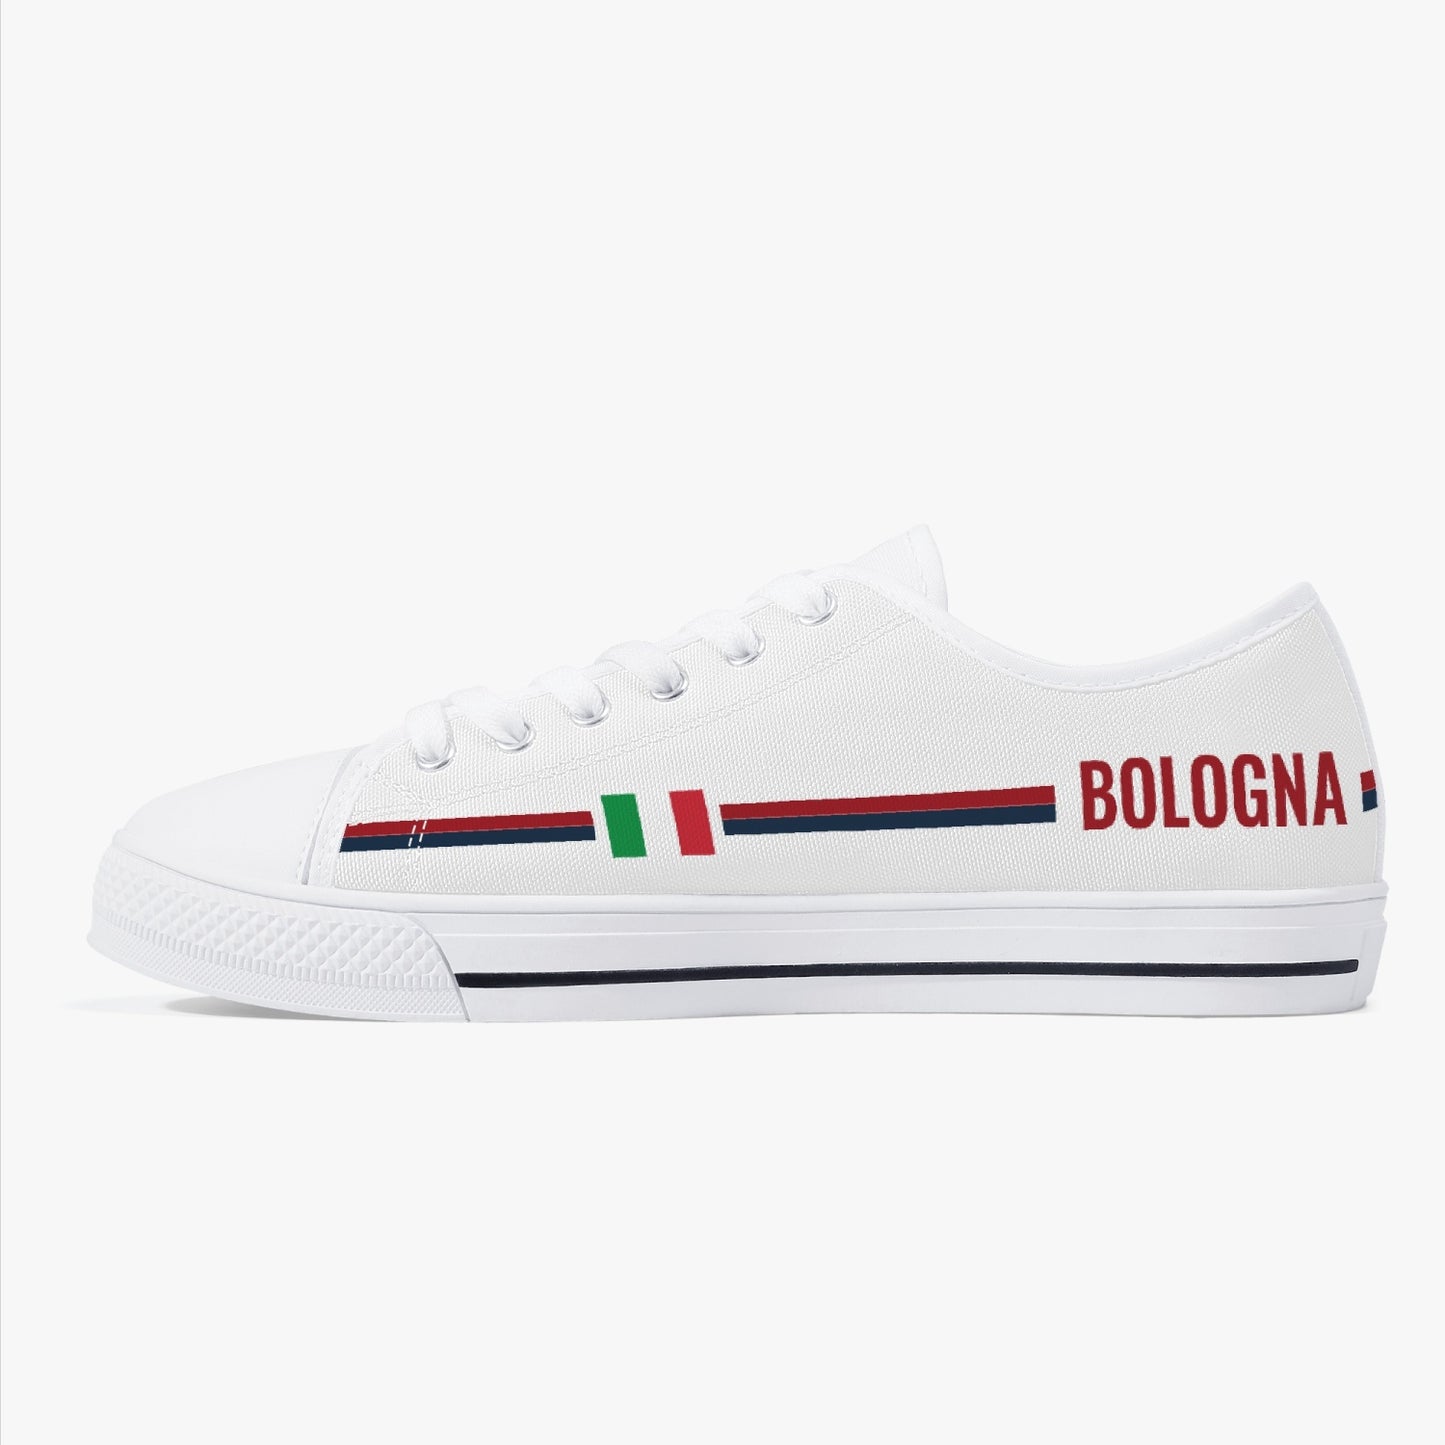 Low-Top Shoes - Bologna - women's